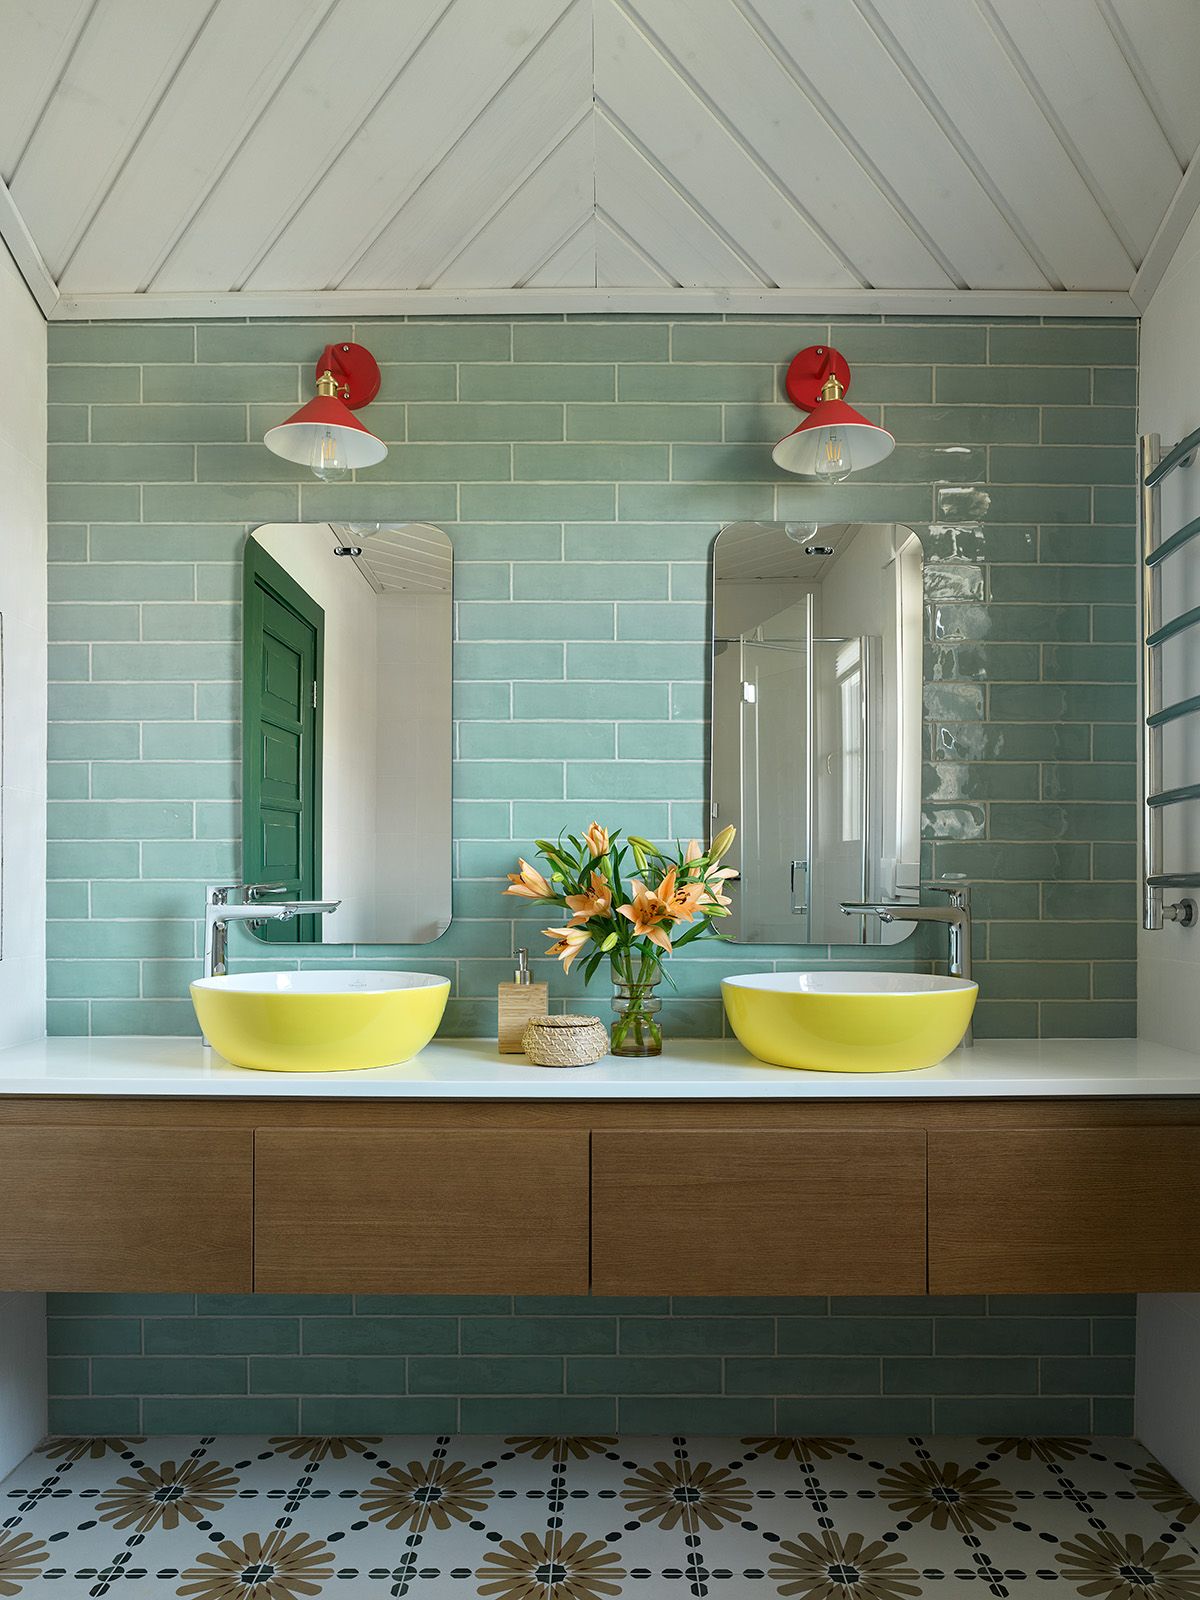 Phòng tắm này là sự kết hợp của màu xanh lá cây đậm cho cánh cửa ra vào được phản chiếu qua tấm gương, xanh ngọc cho gạch thẻ ốp tường sáng bóng và bồn rửa đôi màu vàng chanh cho vẻ đẹp trẻ trung hết nấc.